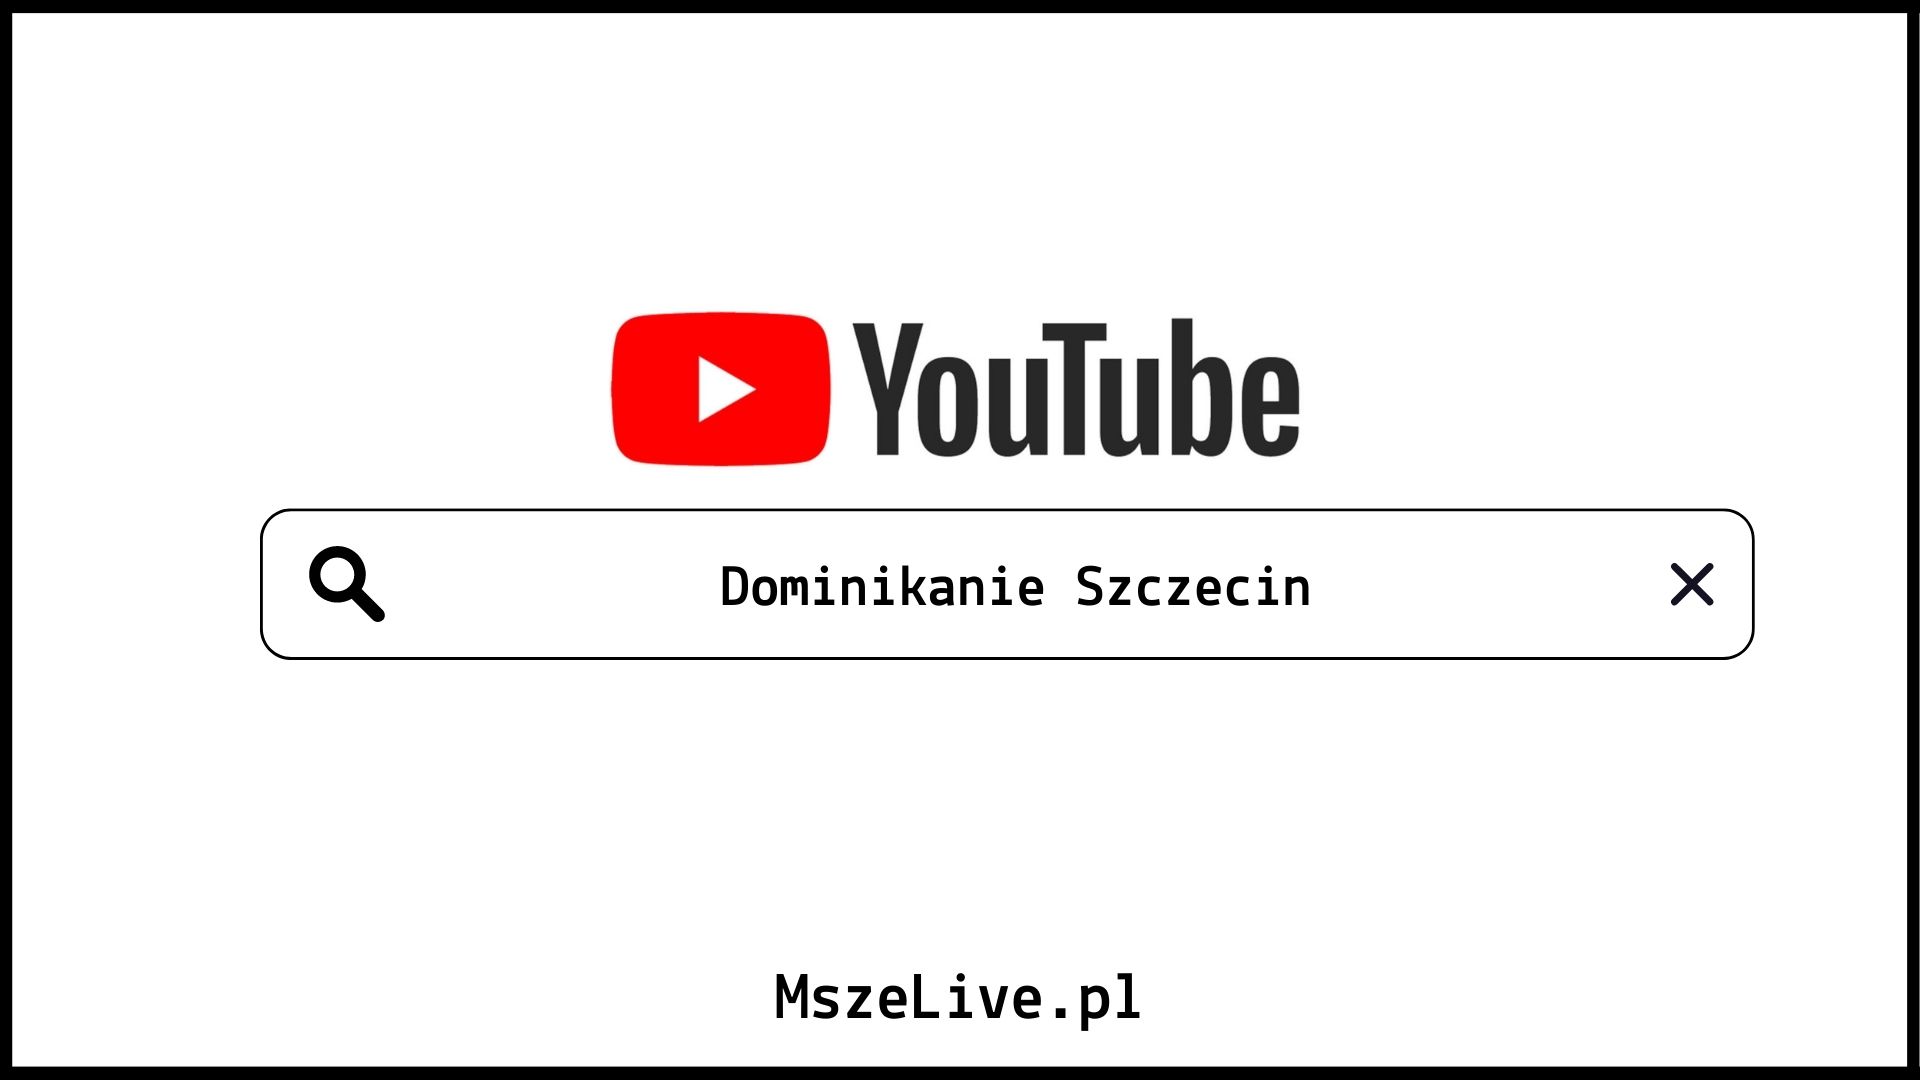 Youtube Dominikanie Szczecin